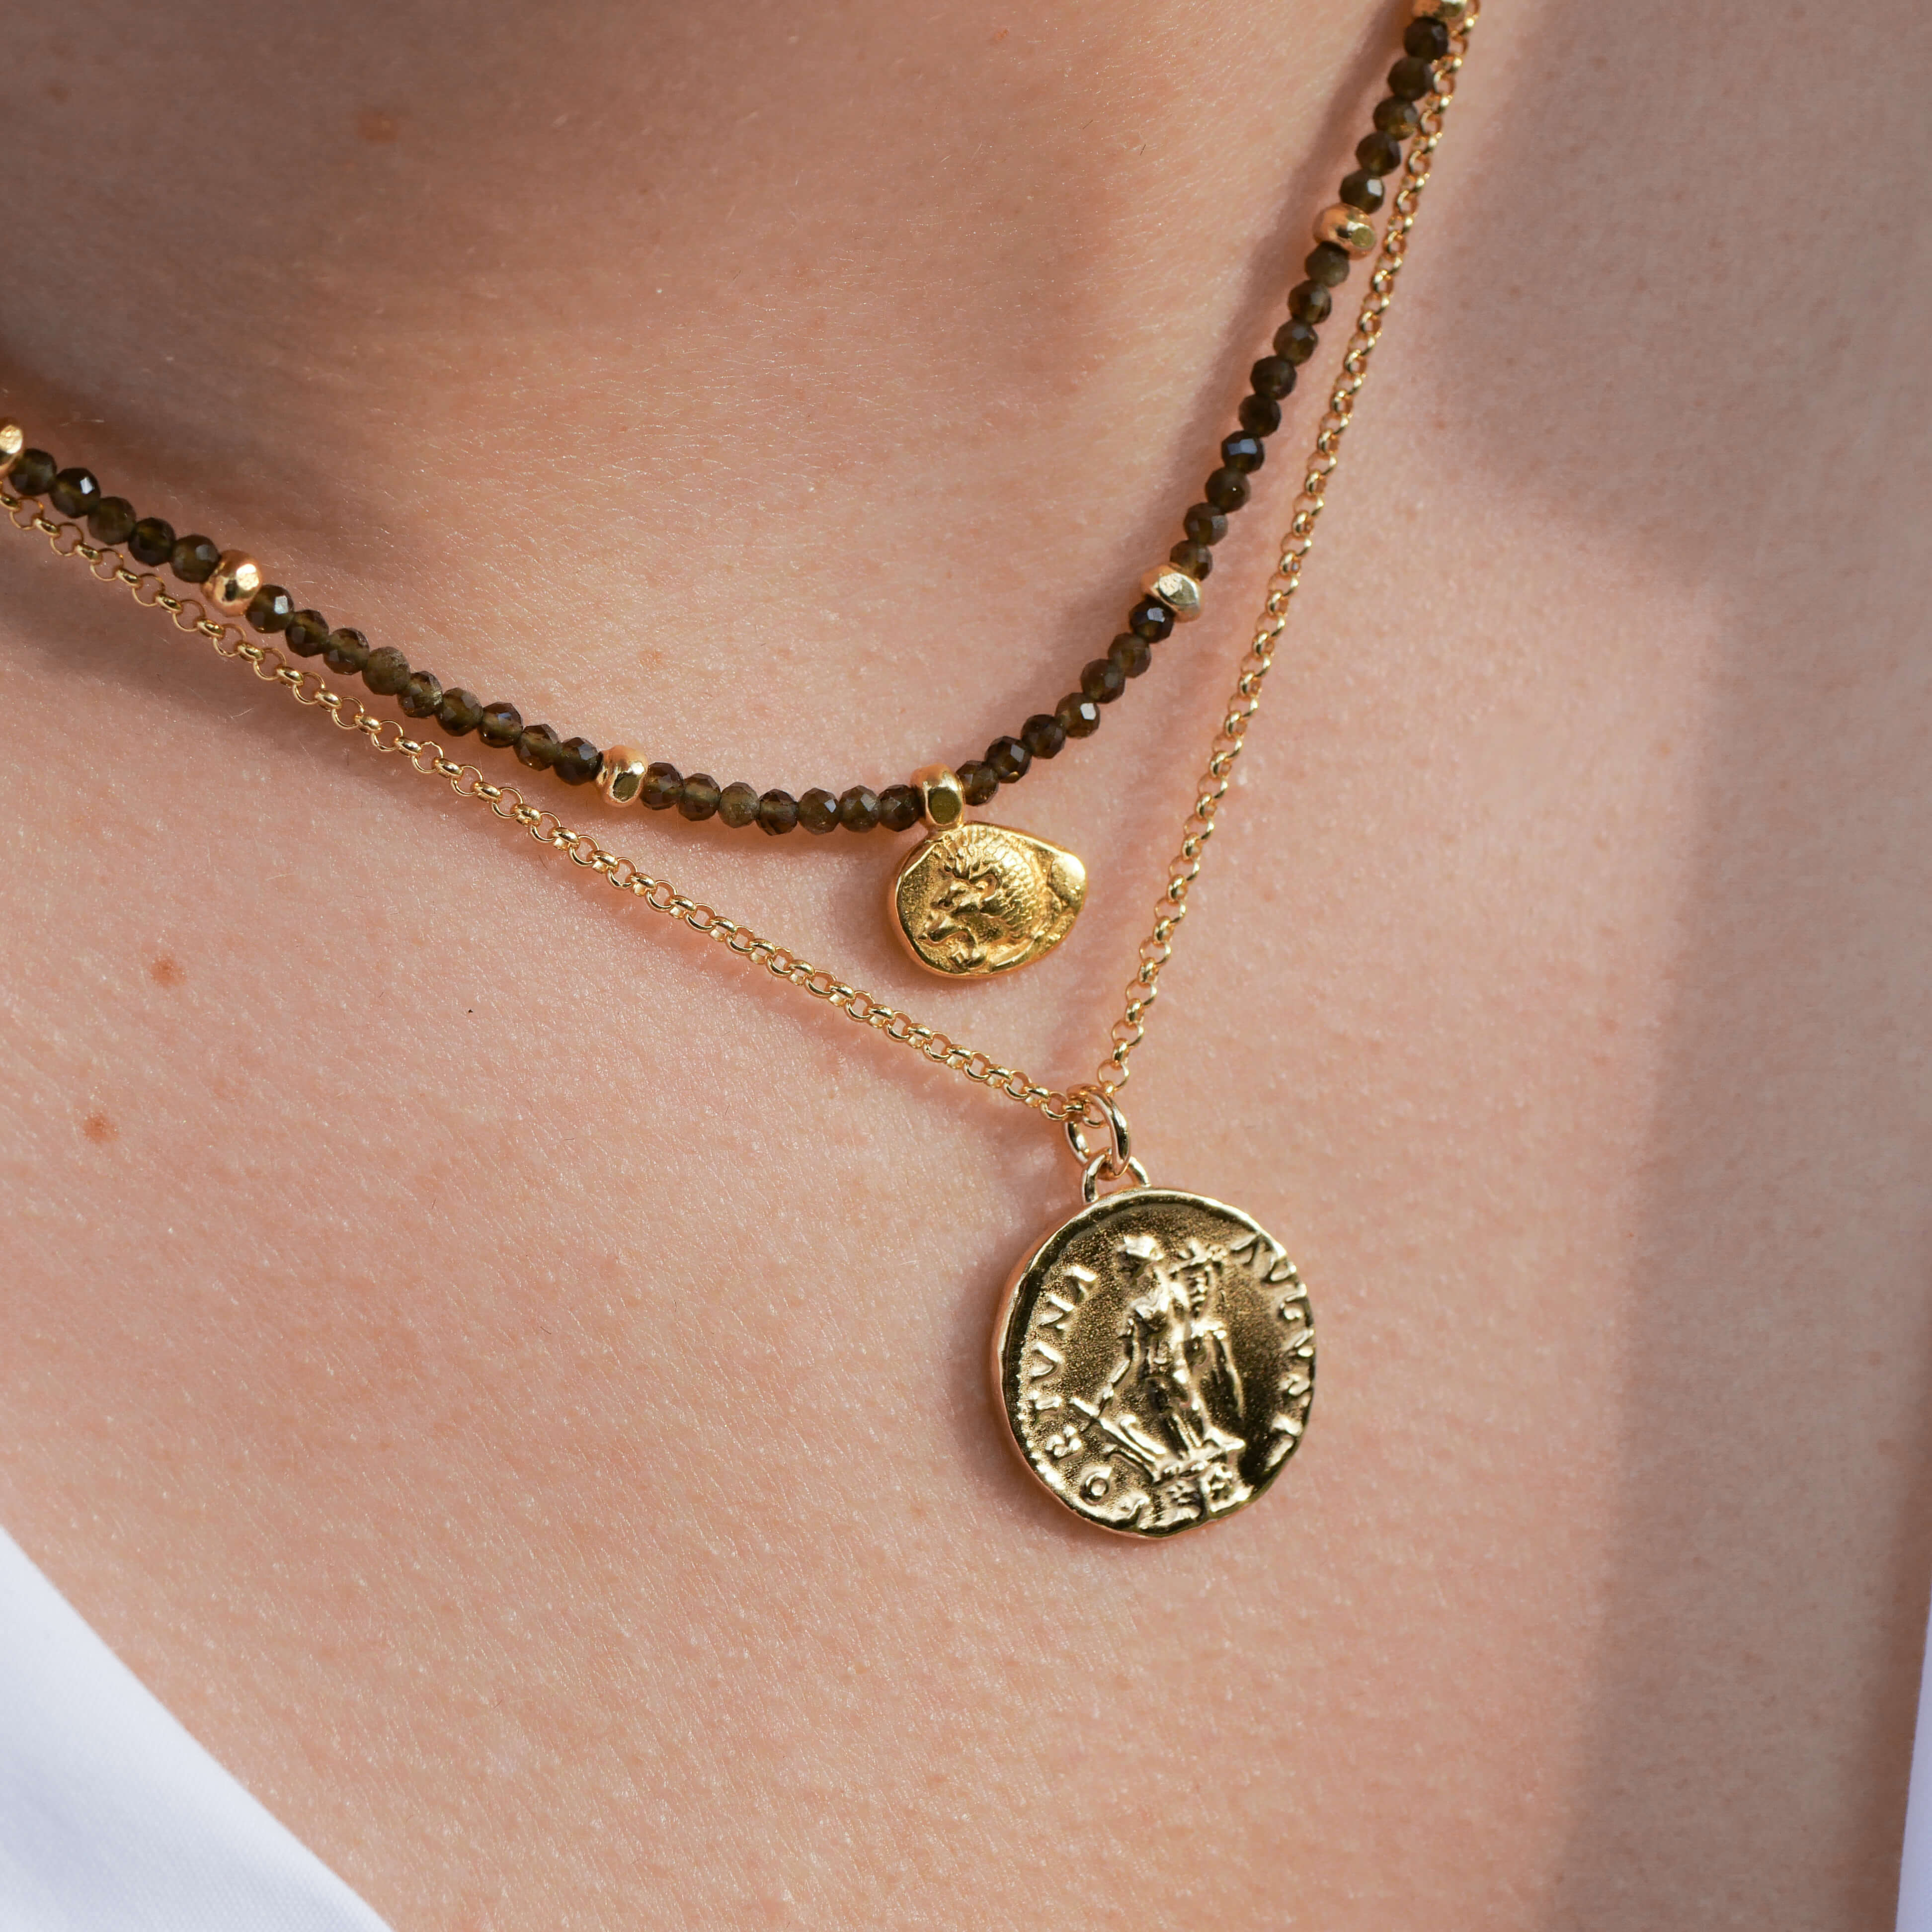 Kette Leona mit antiker Münz Nachprägung. Löwe auf der einen Seite und Stern auf der anderen. Edelsteine sind aus Obsidian in olivgrün khaki - True Nuggets